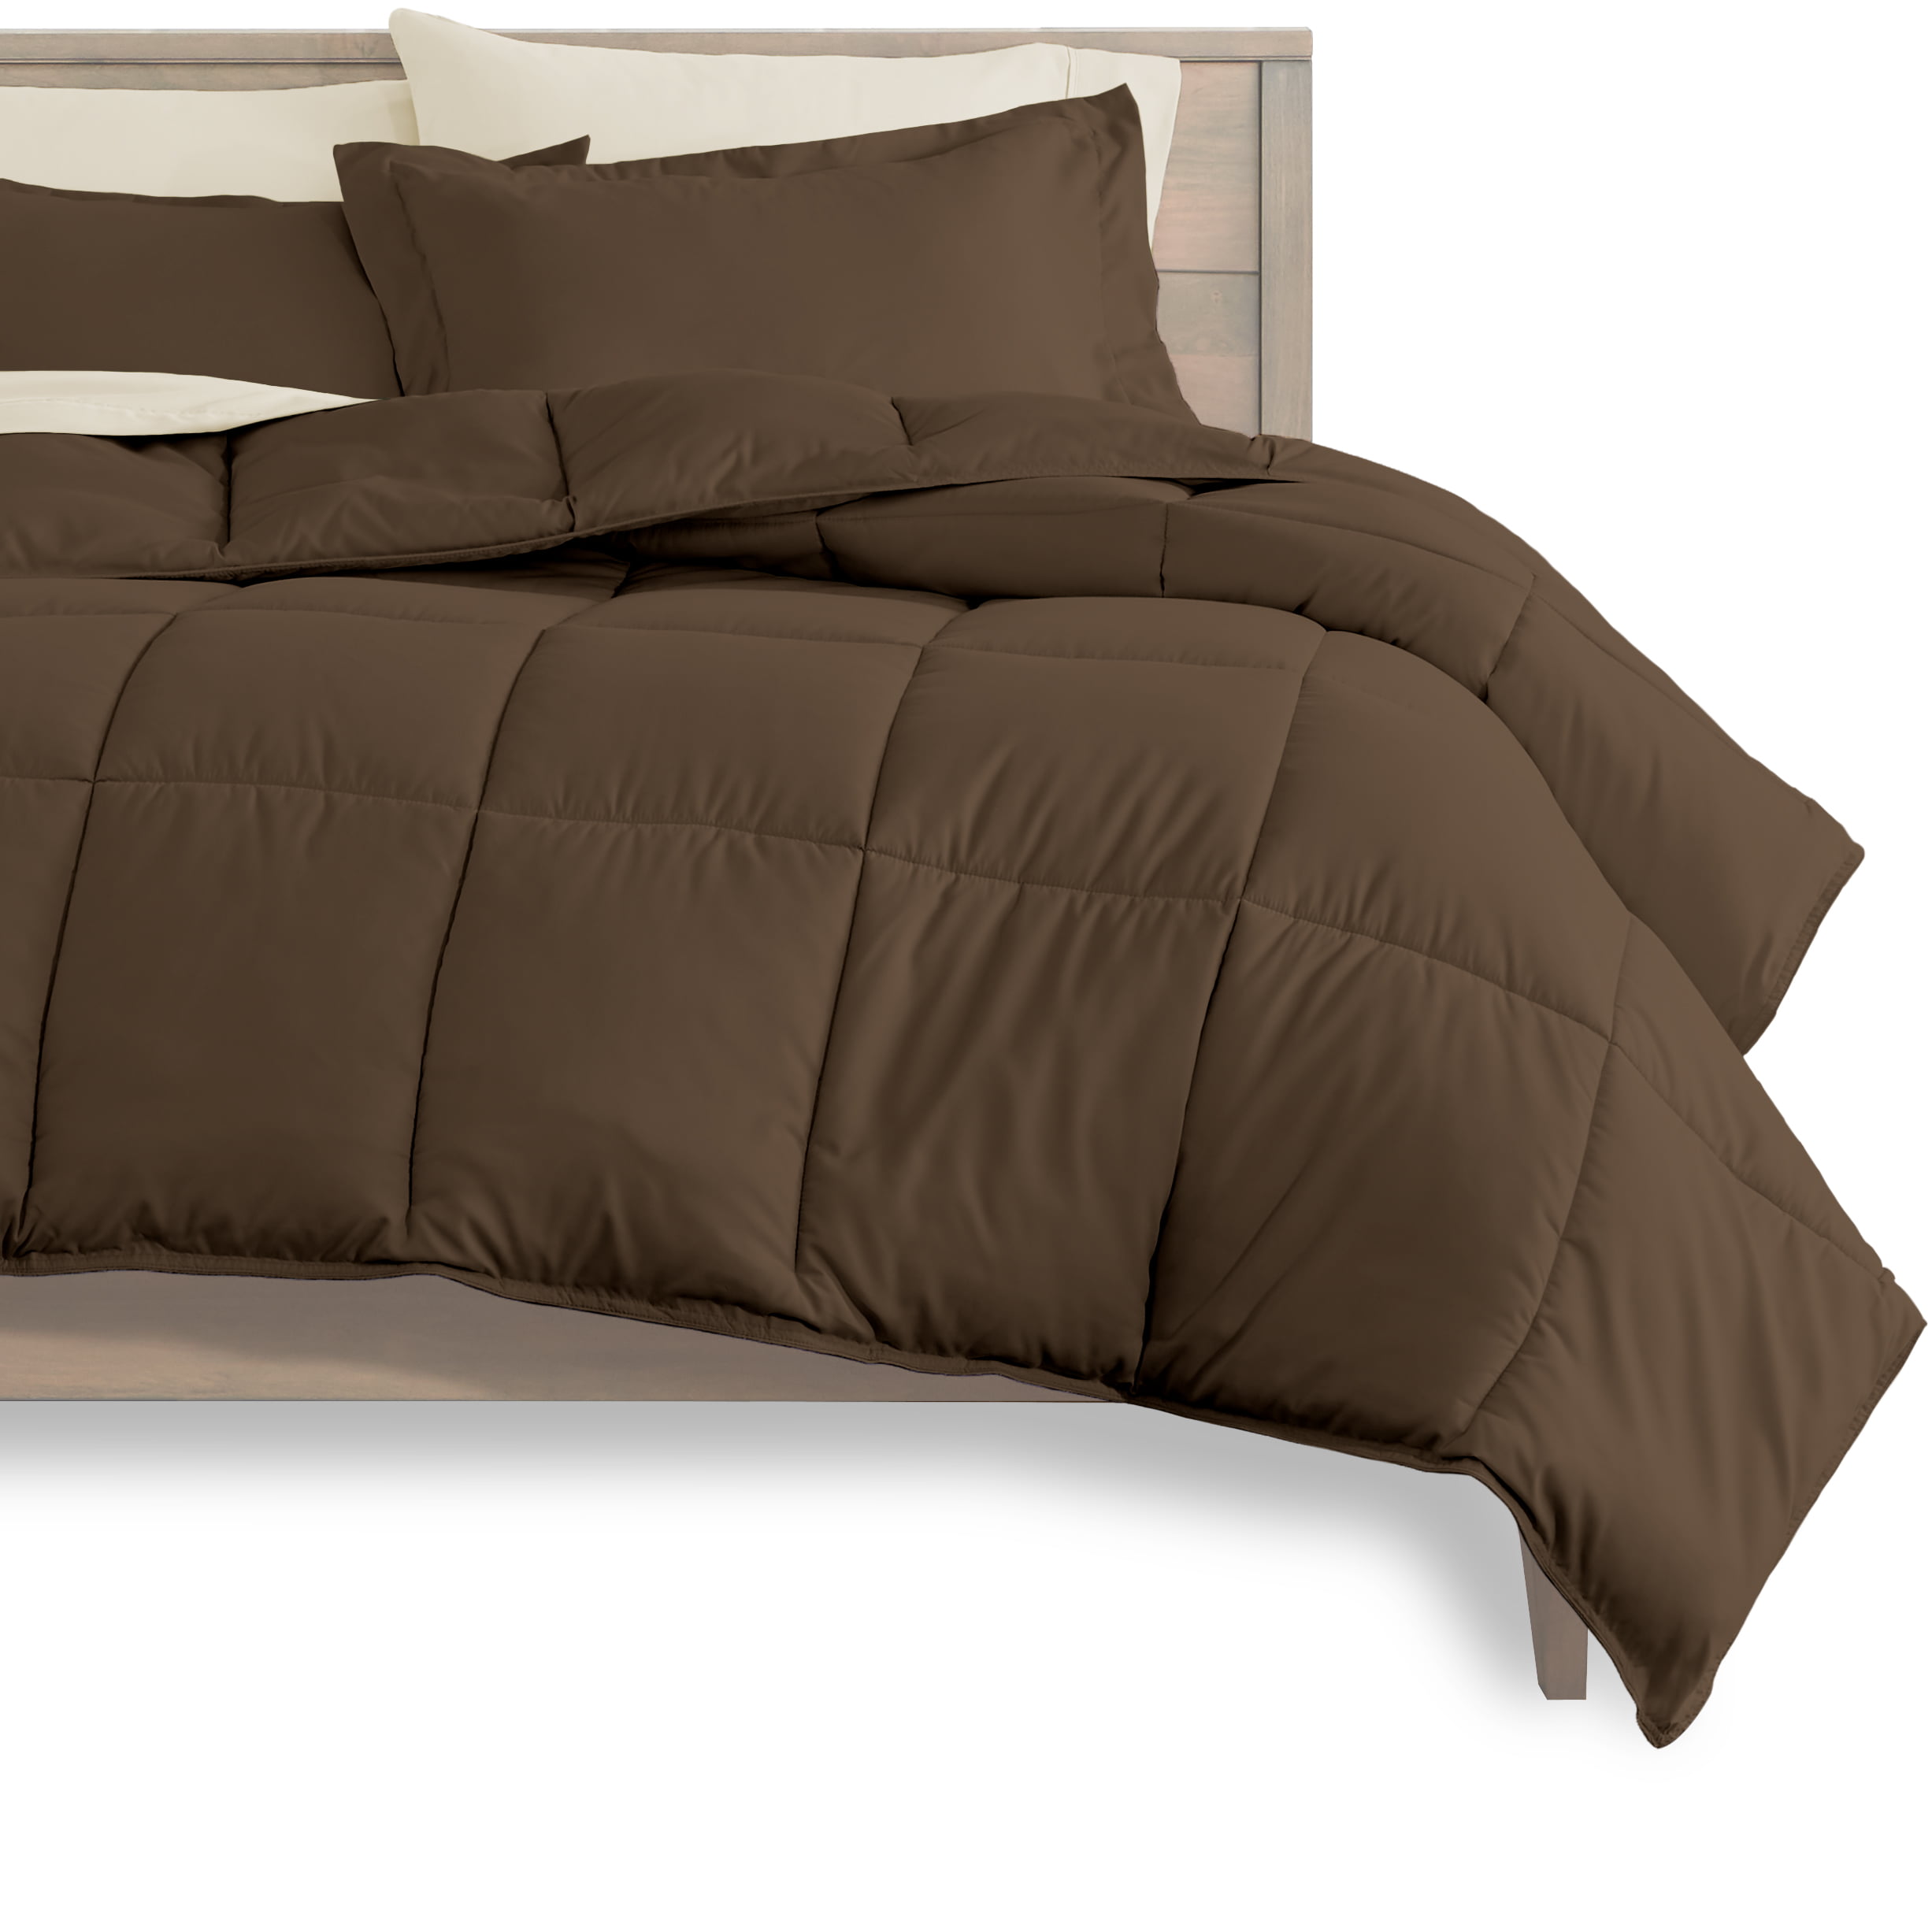 Bare Home 8 Piece Bed In A Bag Split, Split King Adjustable Bed Comforter